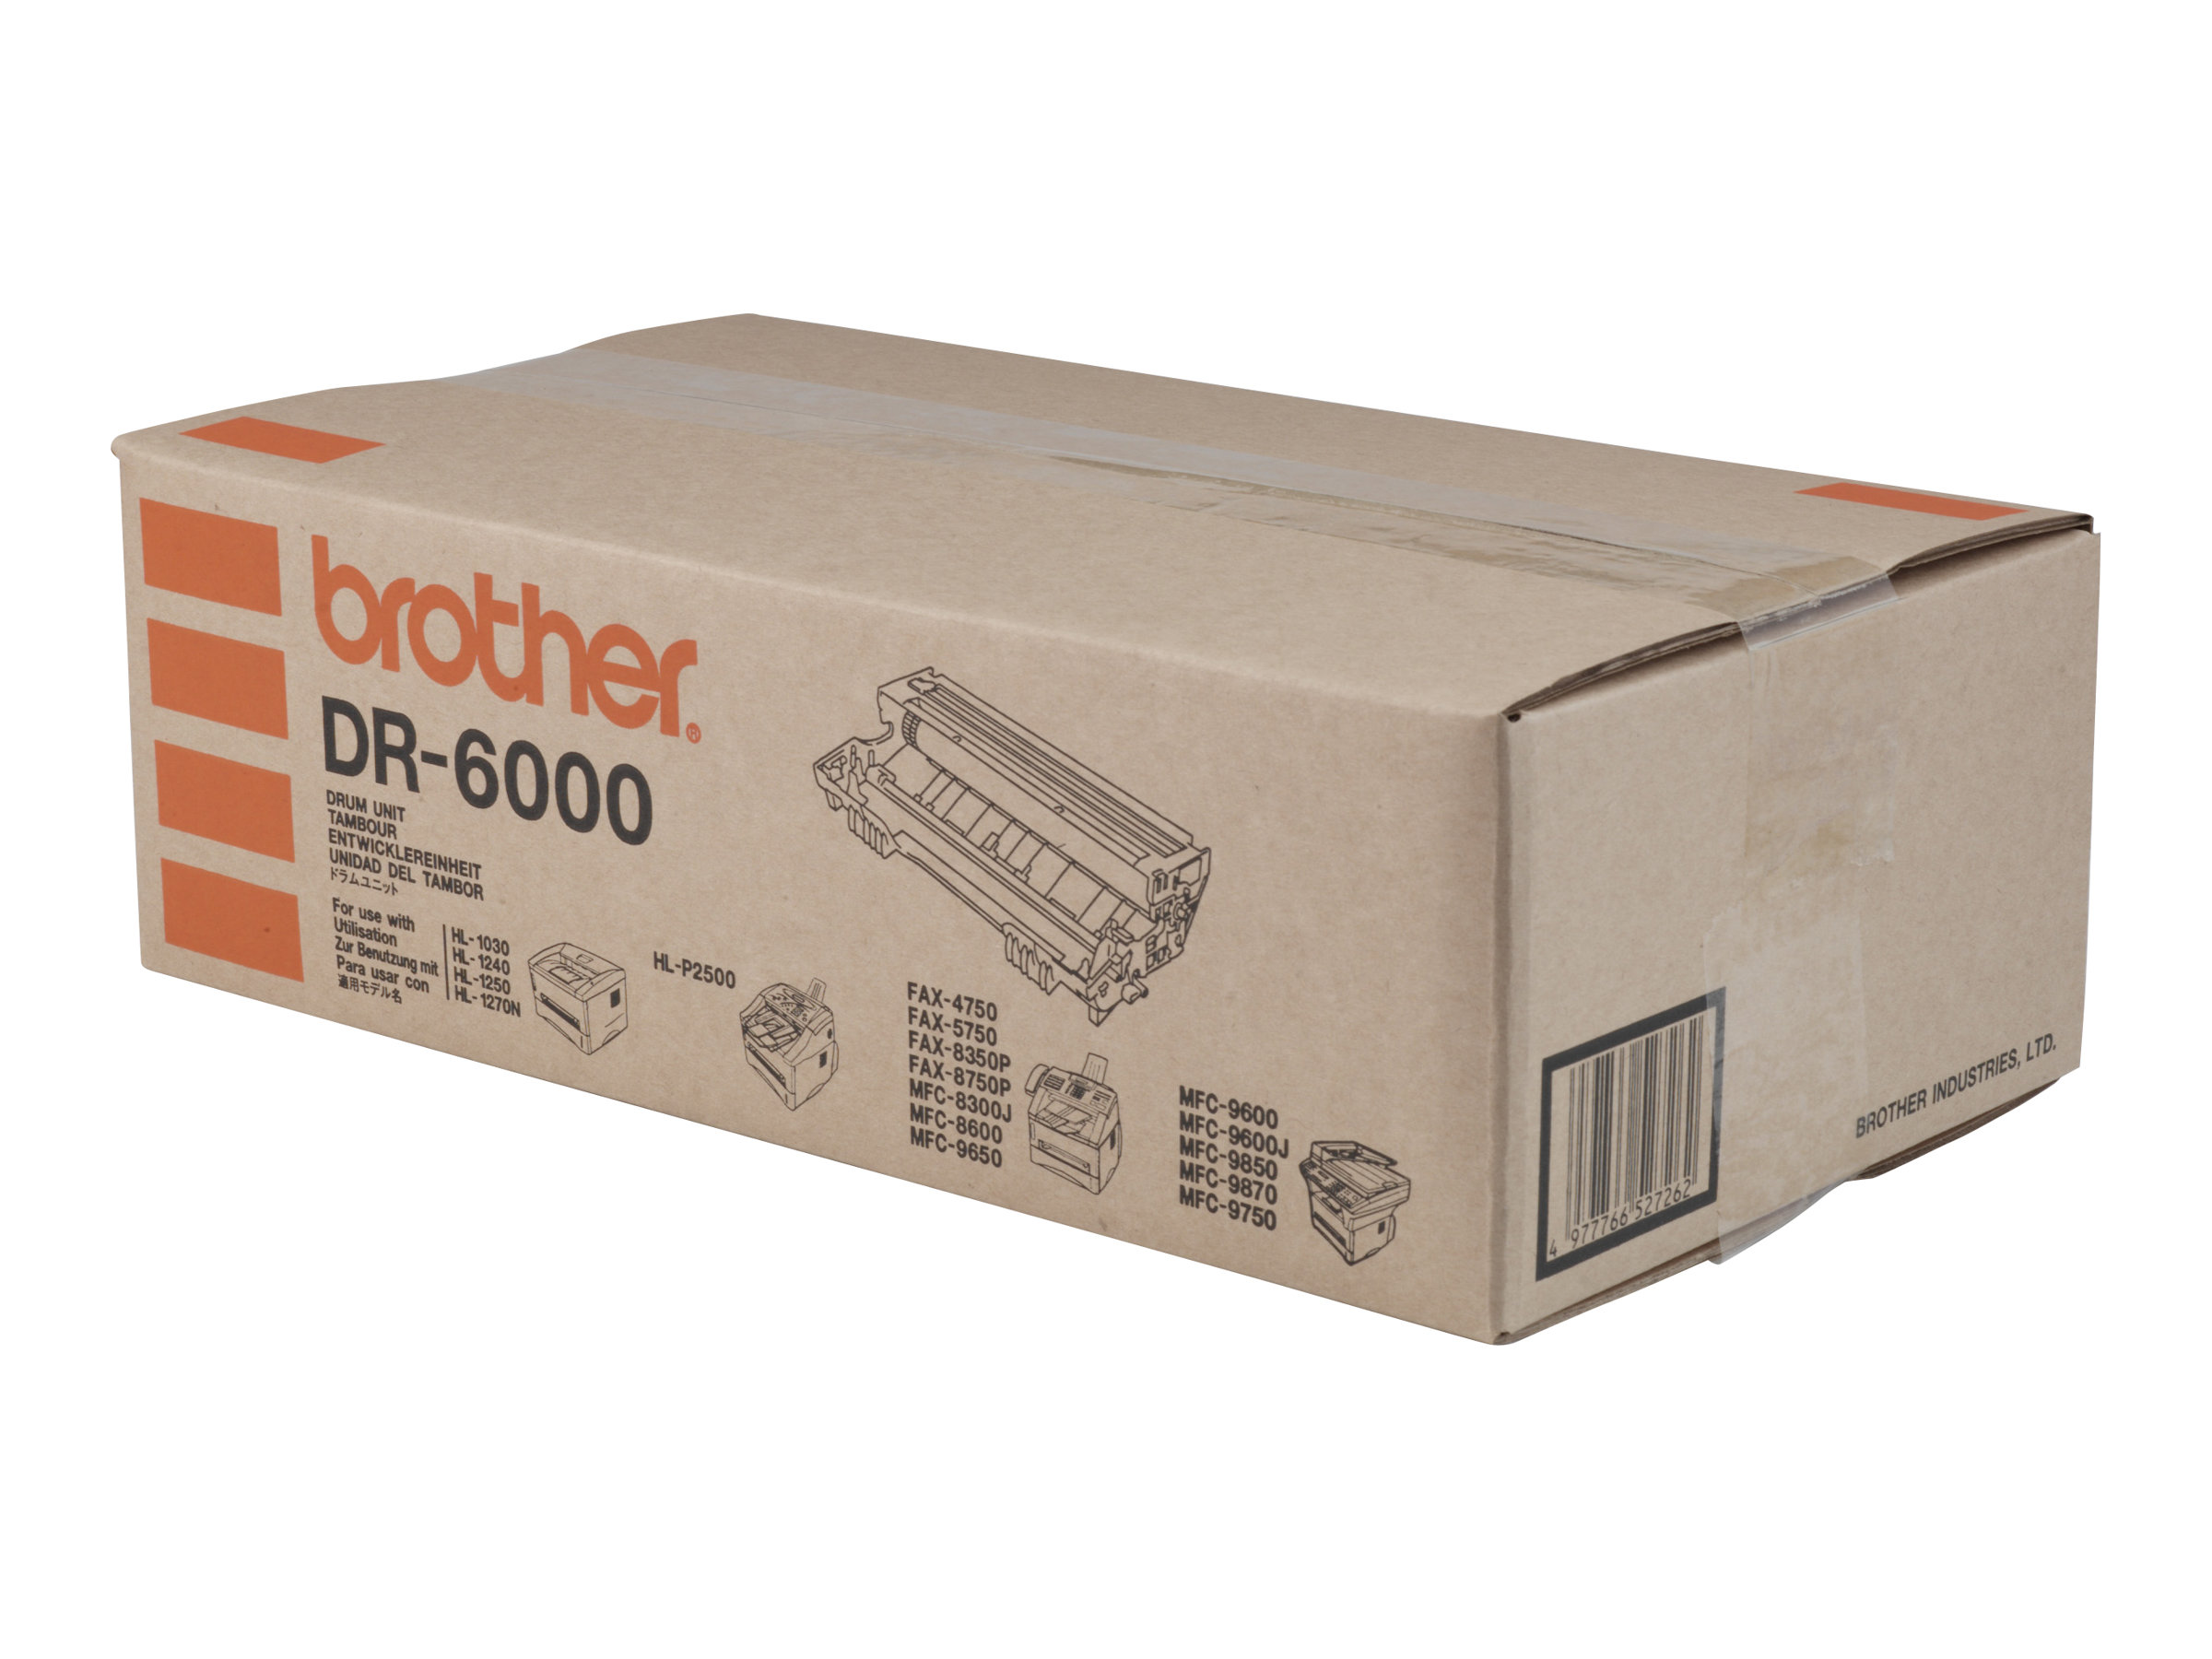 Brother DR6000 - Trommel-Kit - für Brother DCP-1200, HL-1030, 1240, 1250, 1270, 1430, 1440, 1450, 1470, MFC-8300, 8600, 9600 (DR6000)